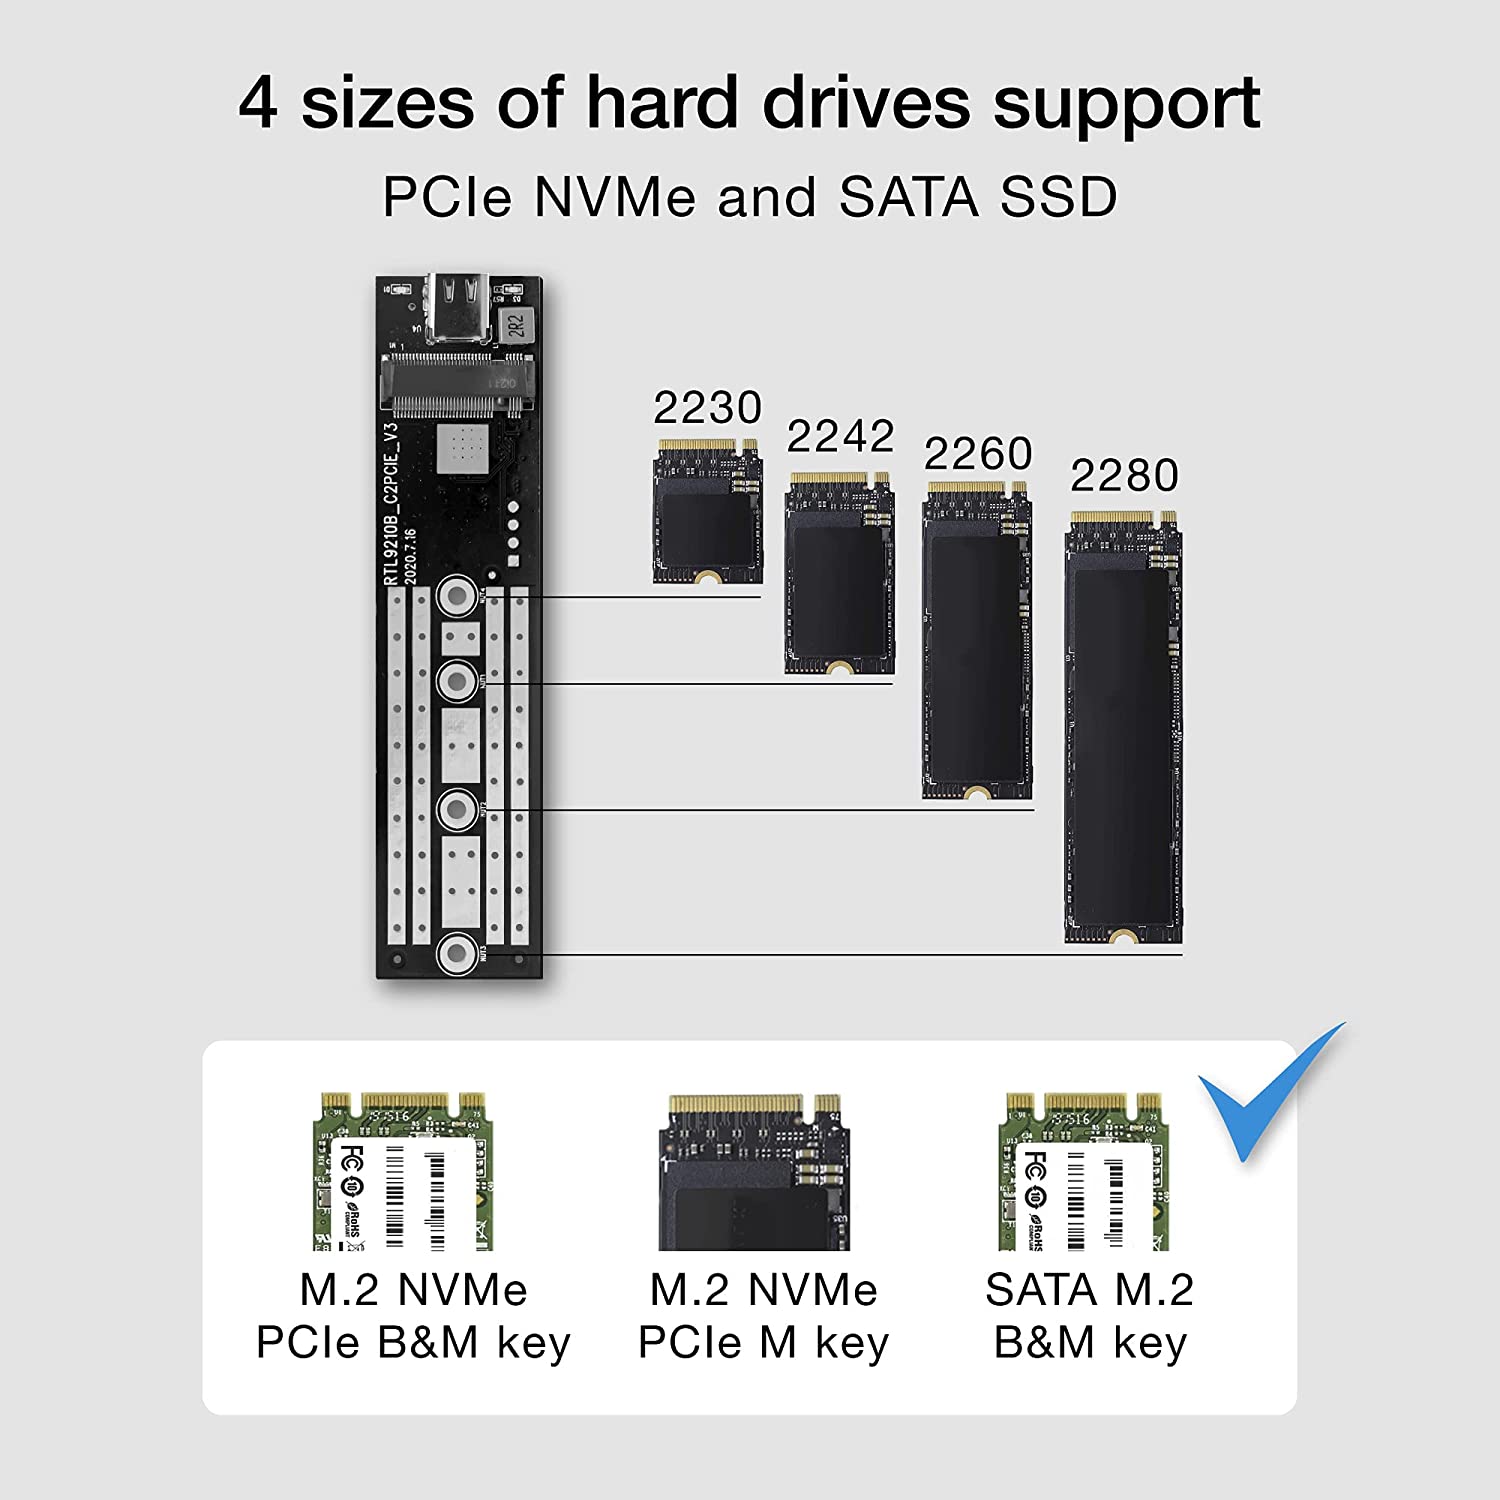 باکس هارد اس اس دی ایزی کست مدل EZCAST SSD M.2 NVME PORTABLE ENCLOSURE